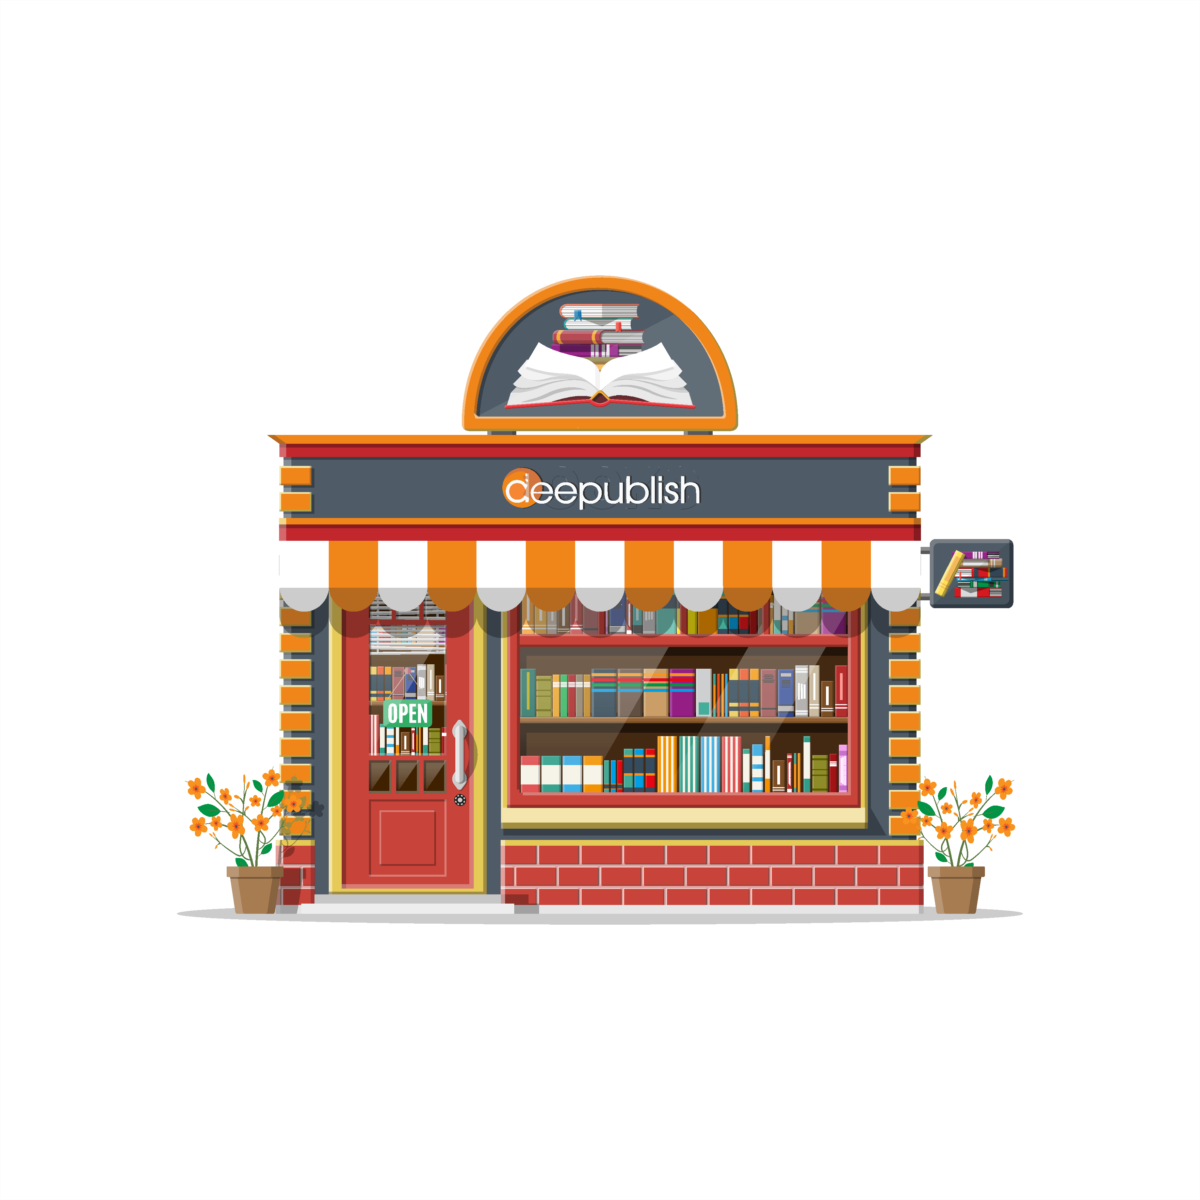 Like shop book. Книжный магазин. Bookshop картинка для детей. Book shop картинка для детей. Книжный магазин рисунок.